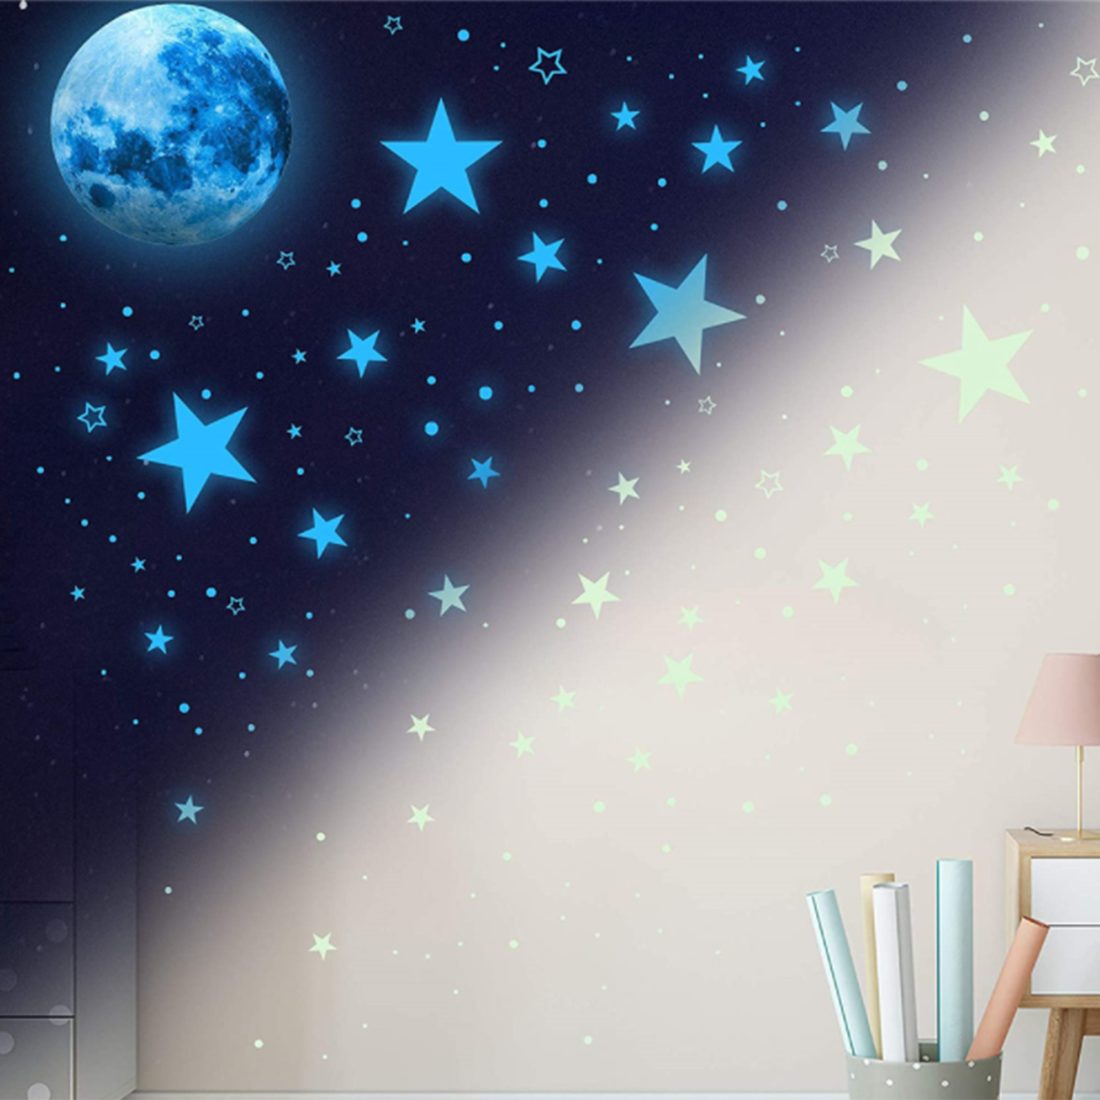 Haiaveng Wandtattoo Leuchtsterne Selbstklebend Kinderzimmer Sterne Wandsticker, Leuchtsticker Wandaufkleber Mond und Wandtattoo, Fluoreszierend